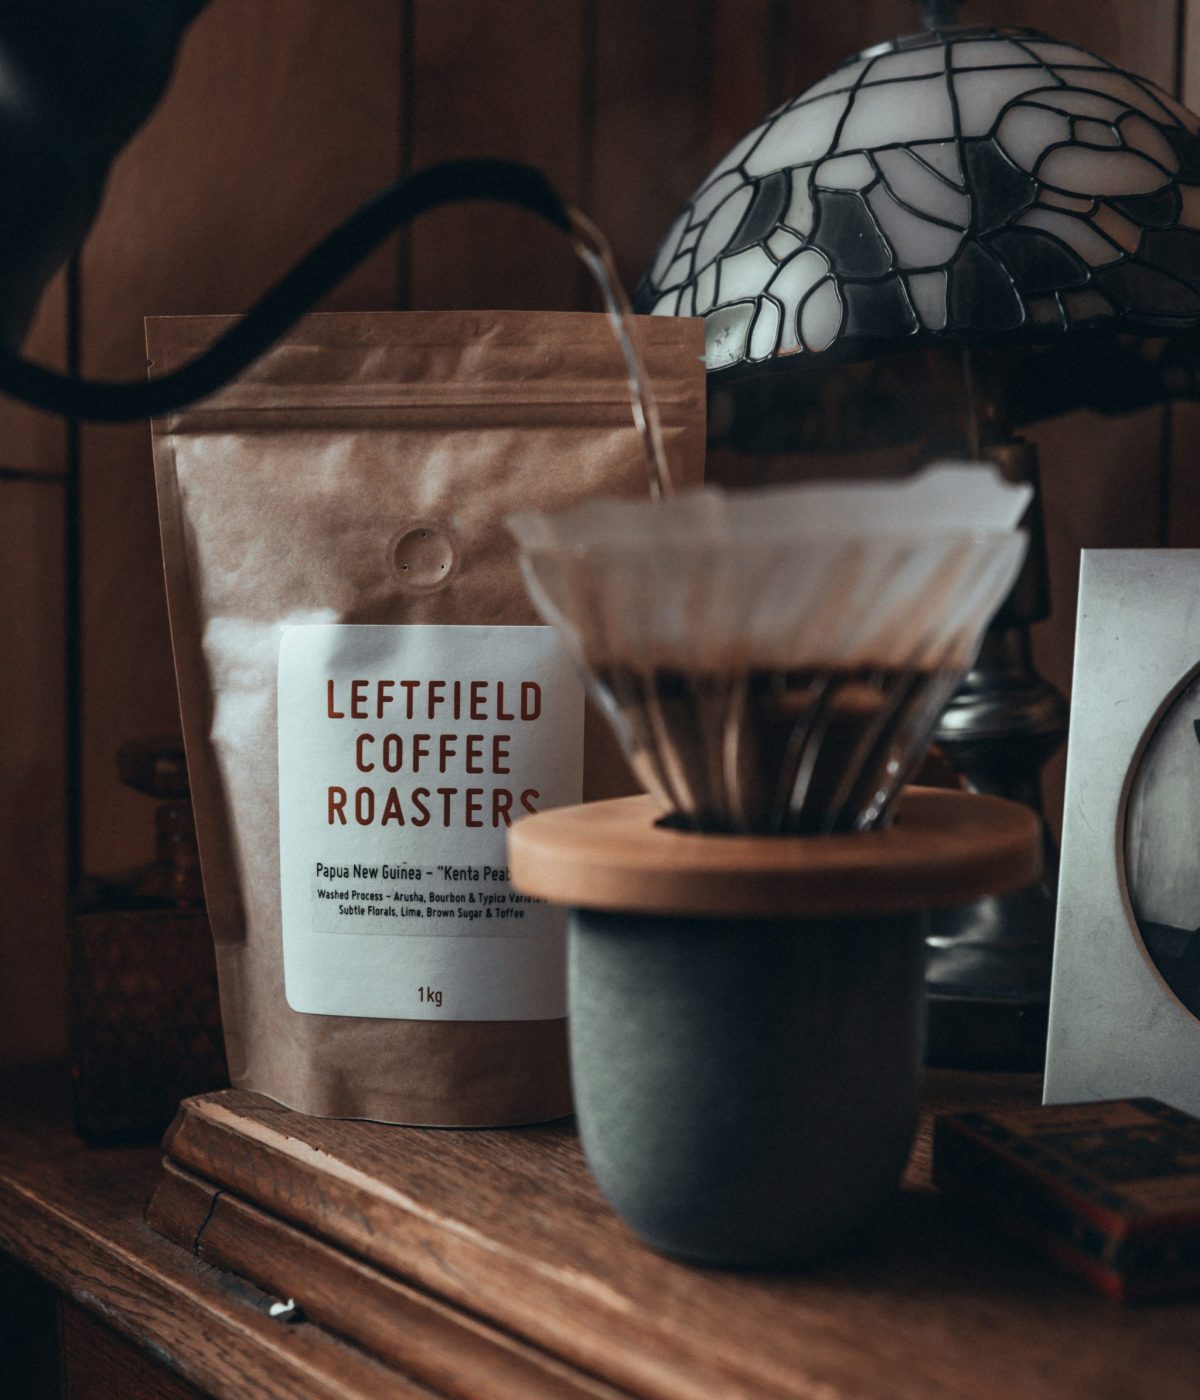 Leftfield Coffee Roasters